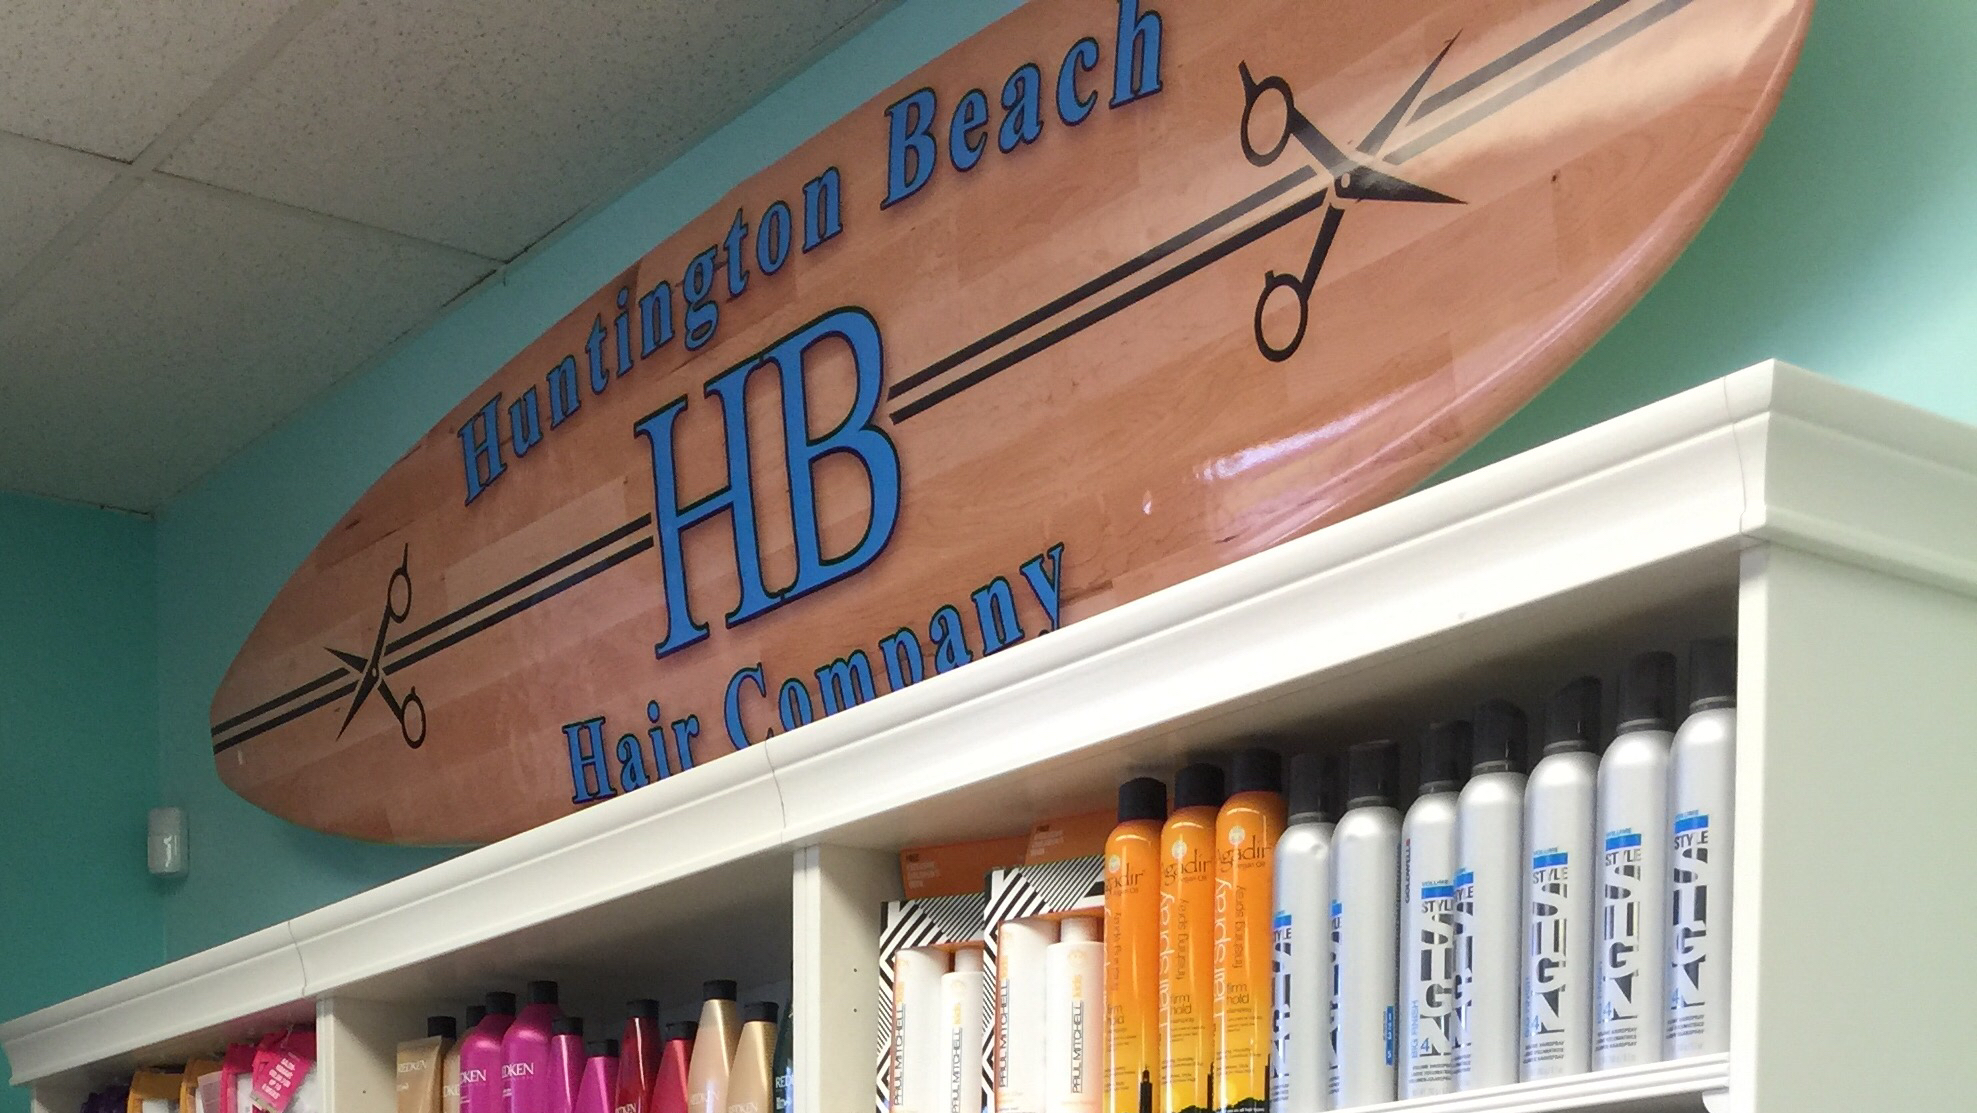 Huntington Beach Hair Company